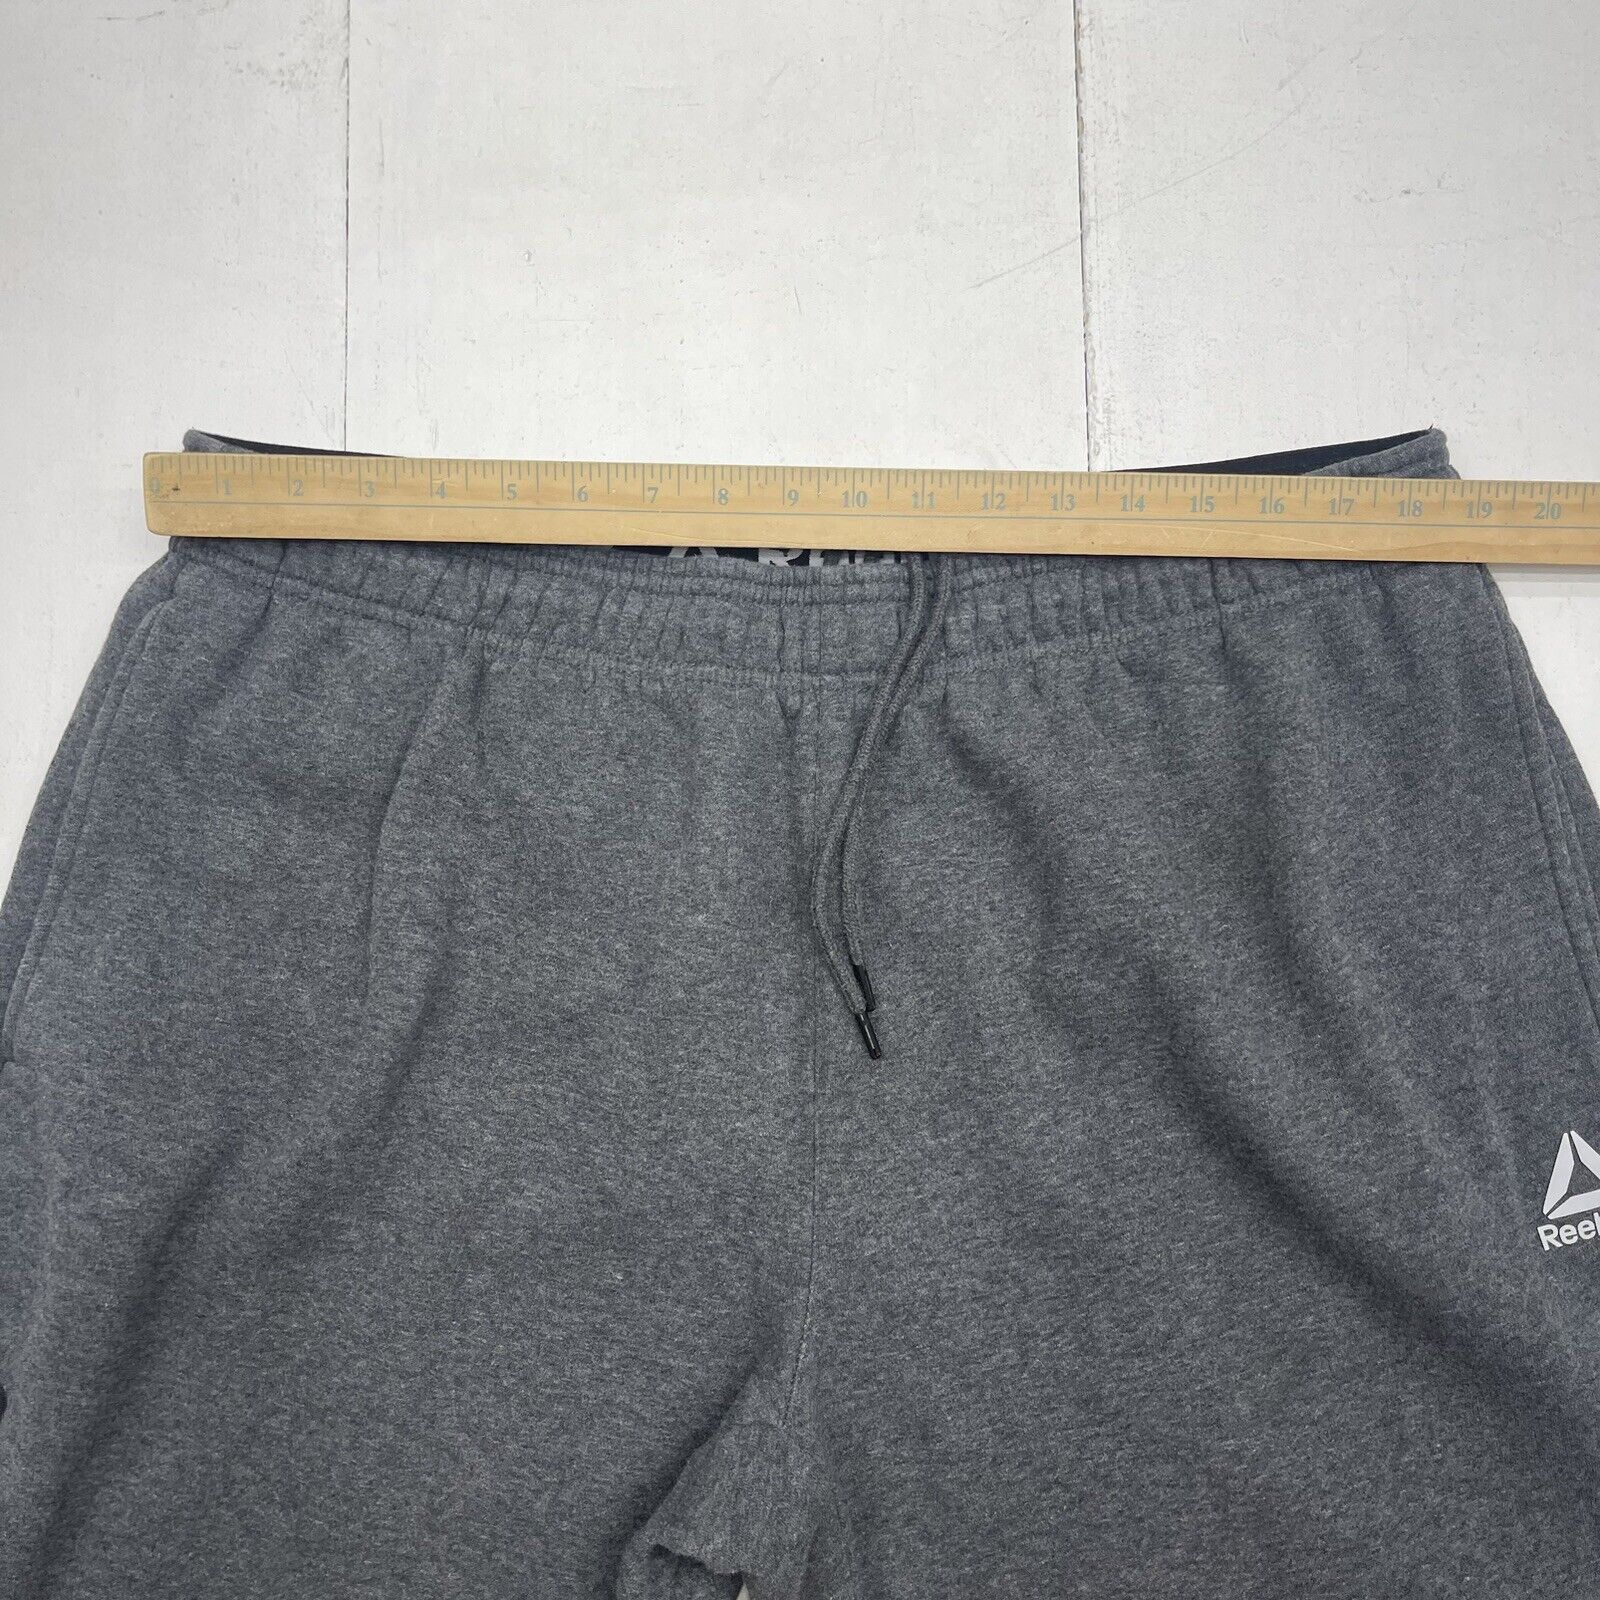 Reebok Charcoal Grey Sweatpant Joggers Mens Size 2XL - beyond exchange